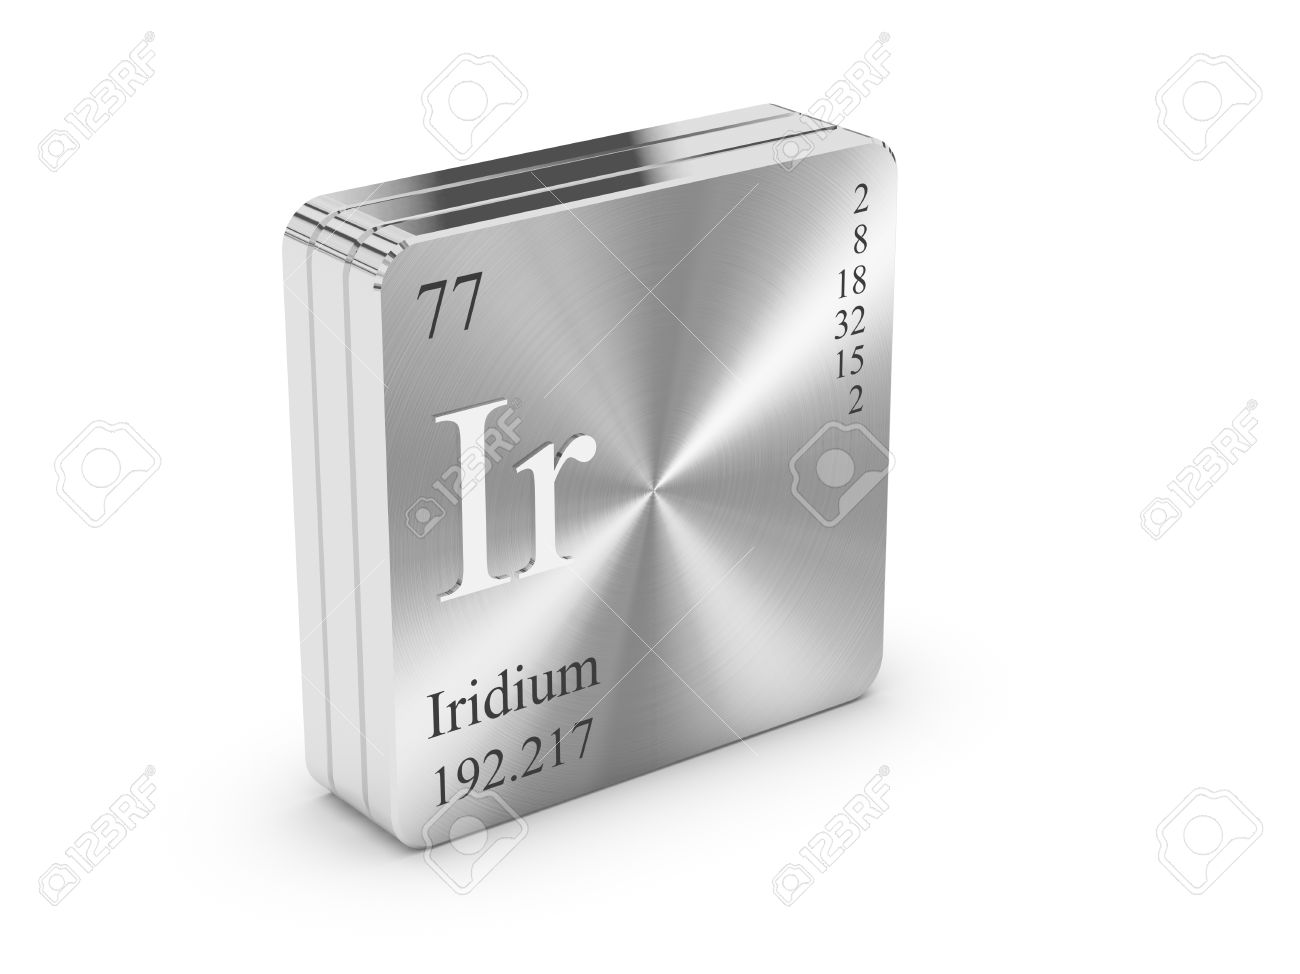 Iridium - weight account